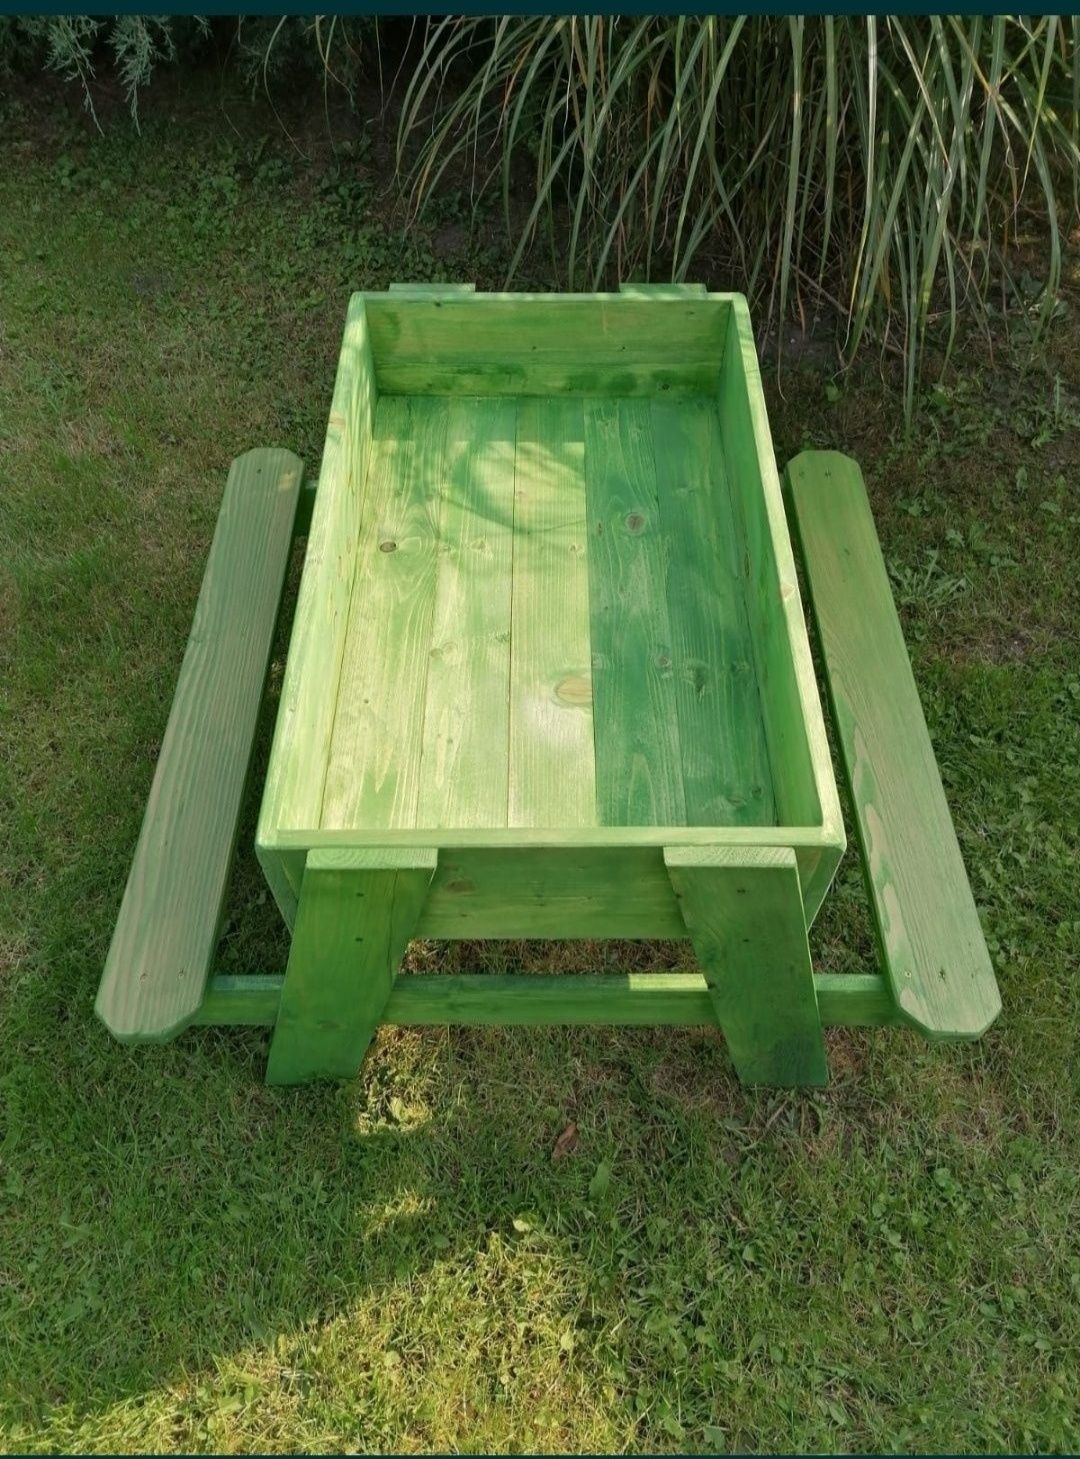 Stolik-piaskownica z ławeczkami dla dzieci, drewniany plac zabaw